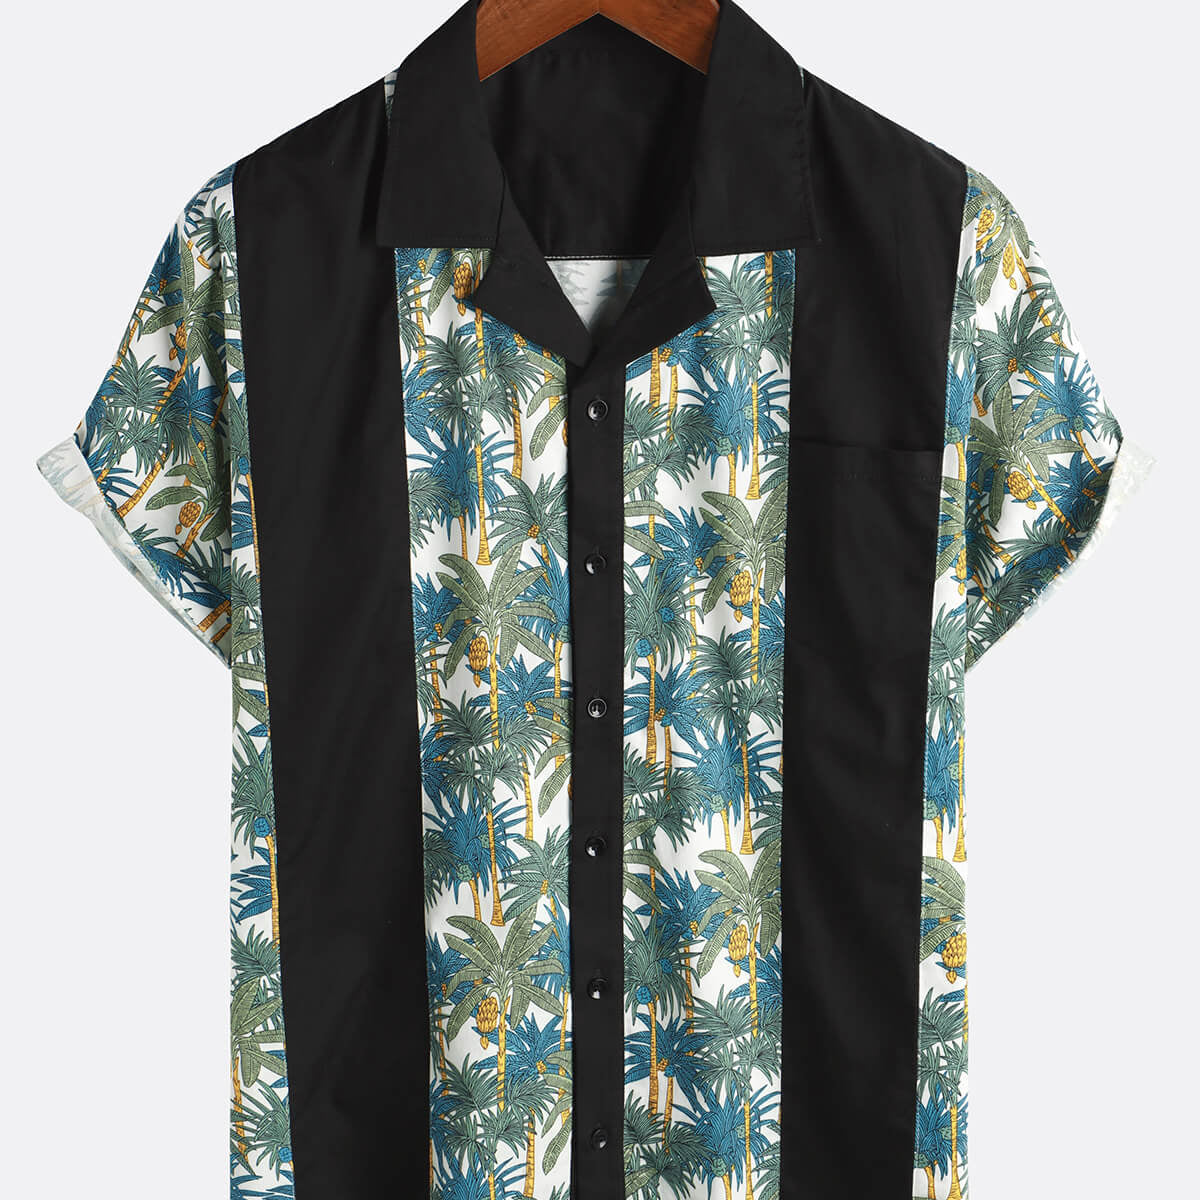 Camisa de verano hawaiana linda de manga corta con botones y estampado de palmeras tropicales para hombre